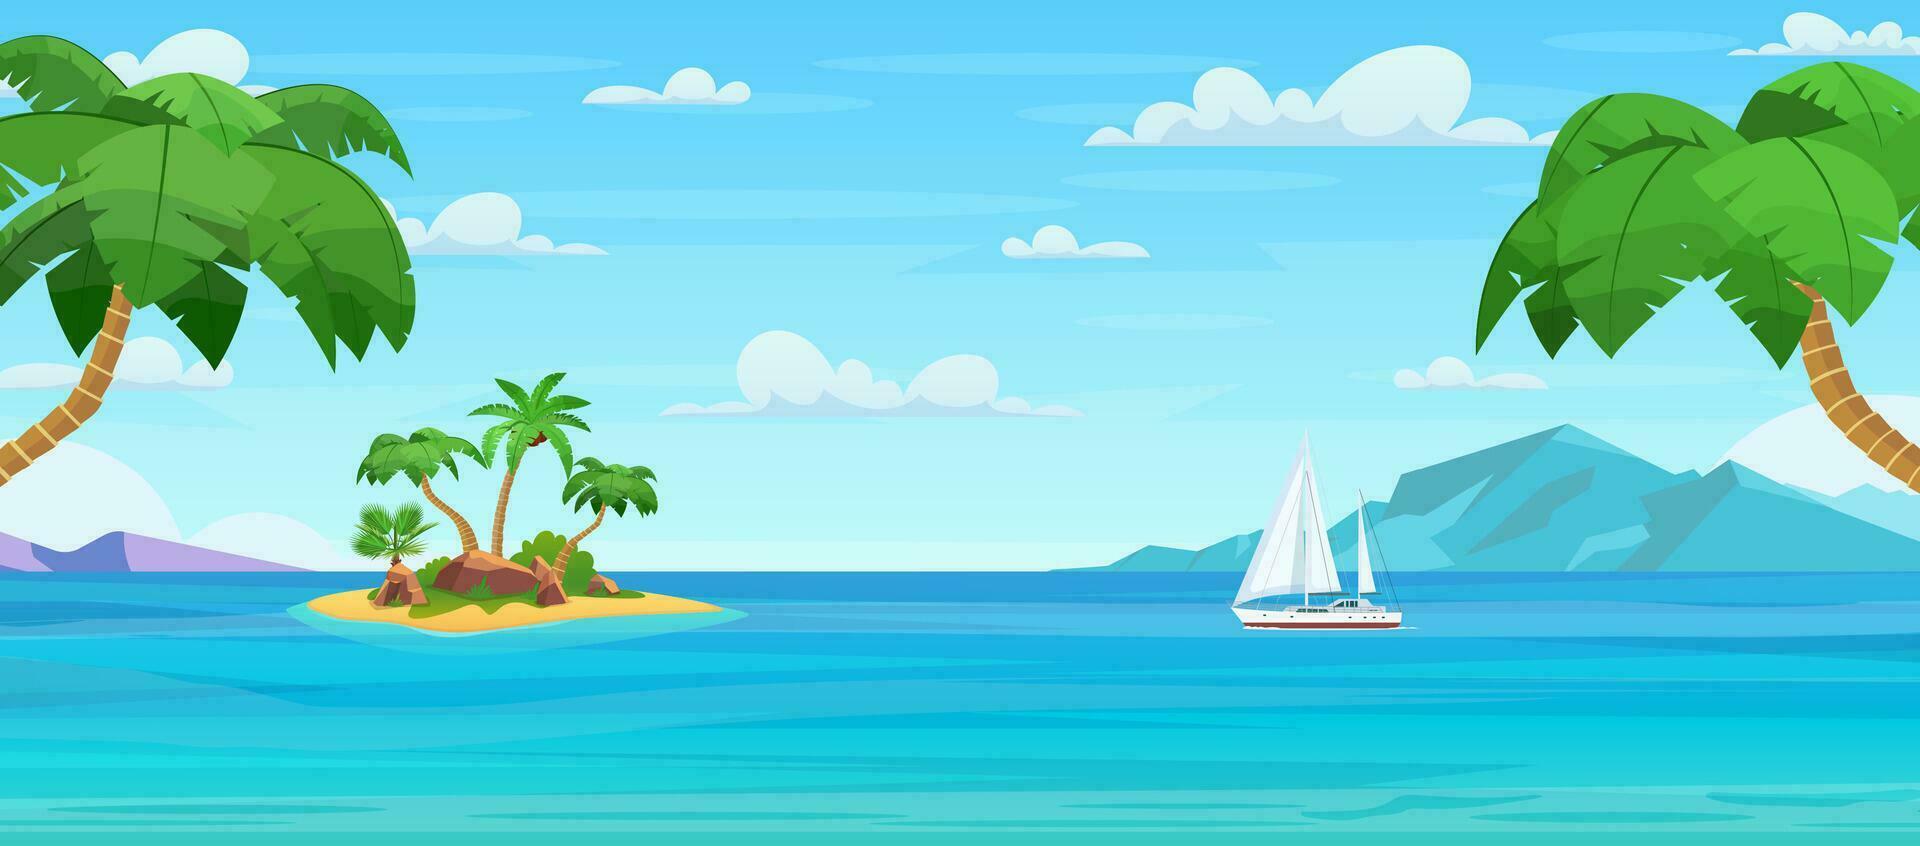 Karikatur tropisch Insel mit Palme Bäume. Insel im Ozean, unbewohnt Insel mit Strand, Felsen umgeben mit Meer Wasser und wolkig Himmel über. tropisch Landschaft. Vektor Illustration im eben Stil